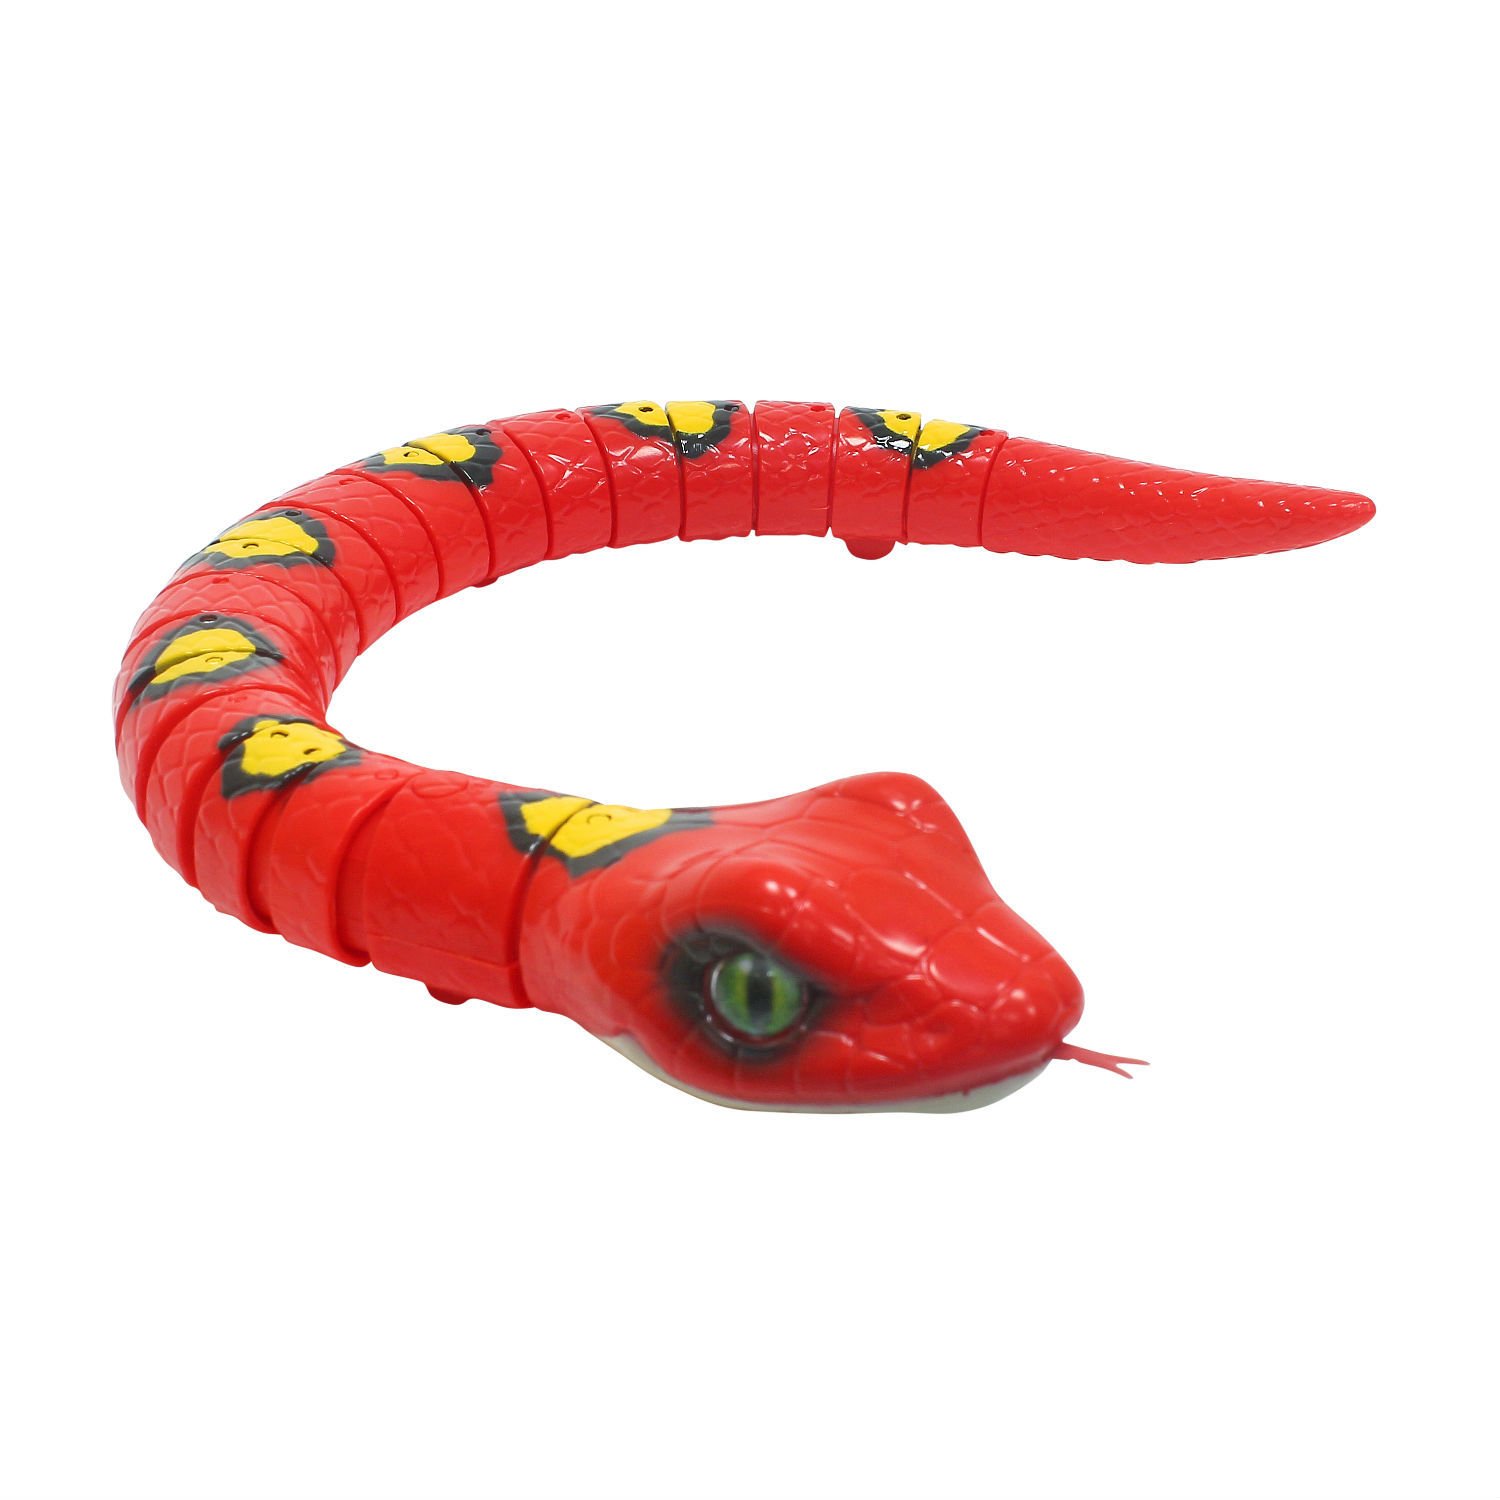 Игрушка змея купить. Zuru интерактивная игрушка робо-змея ROBOALIVE цвет красный. Jpjy Zuru интерактивная игрушка ROBOALIVE робо-змея зеленая t10995. Робот Элайв змея. Робот змея (1csc20003864).